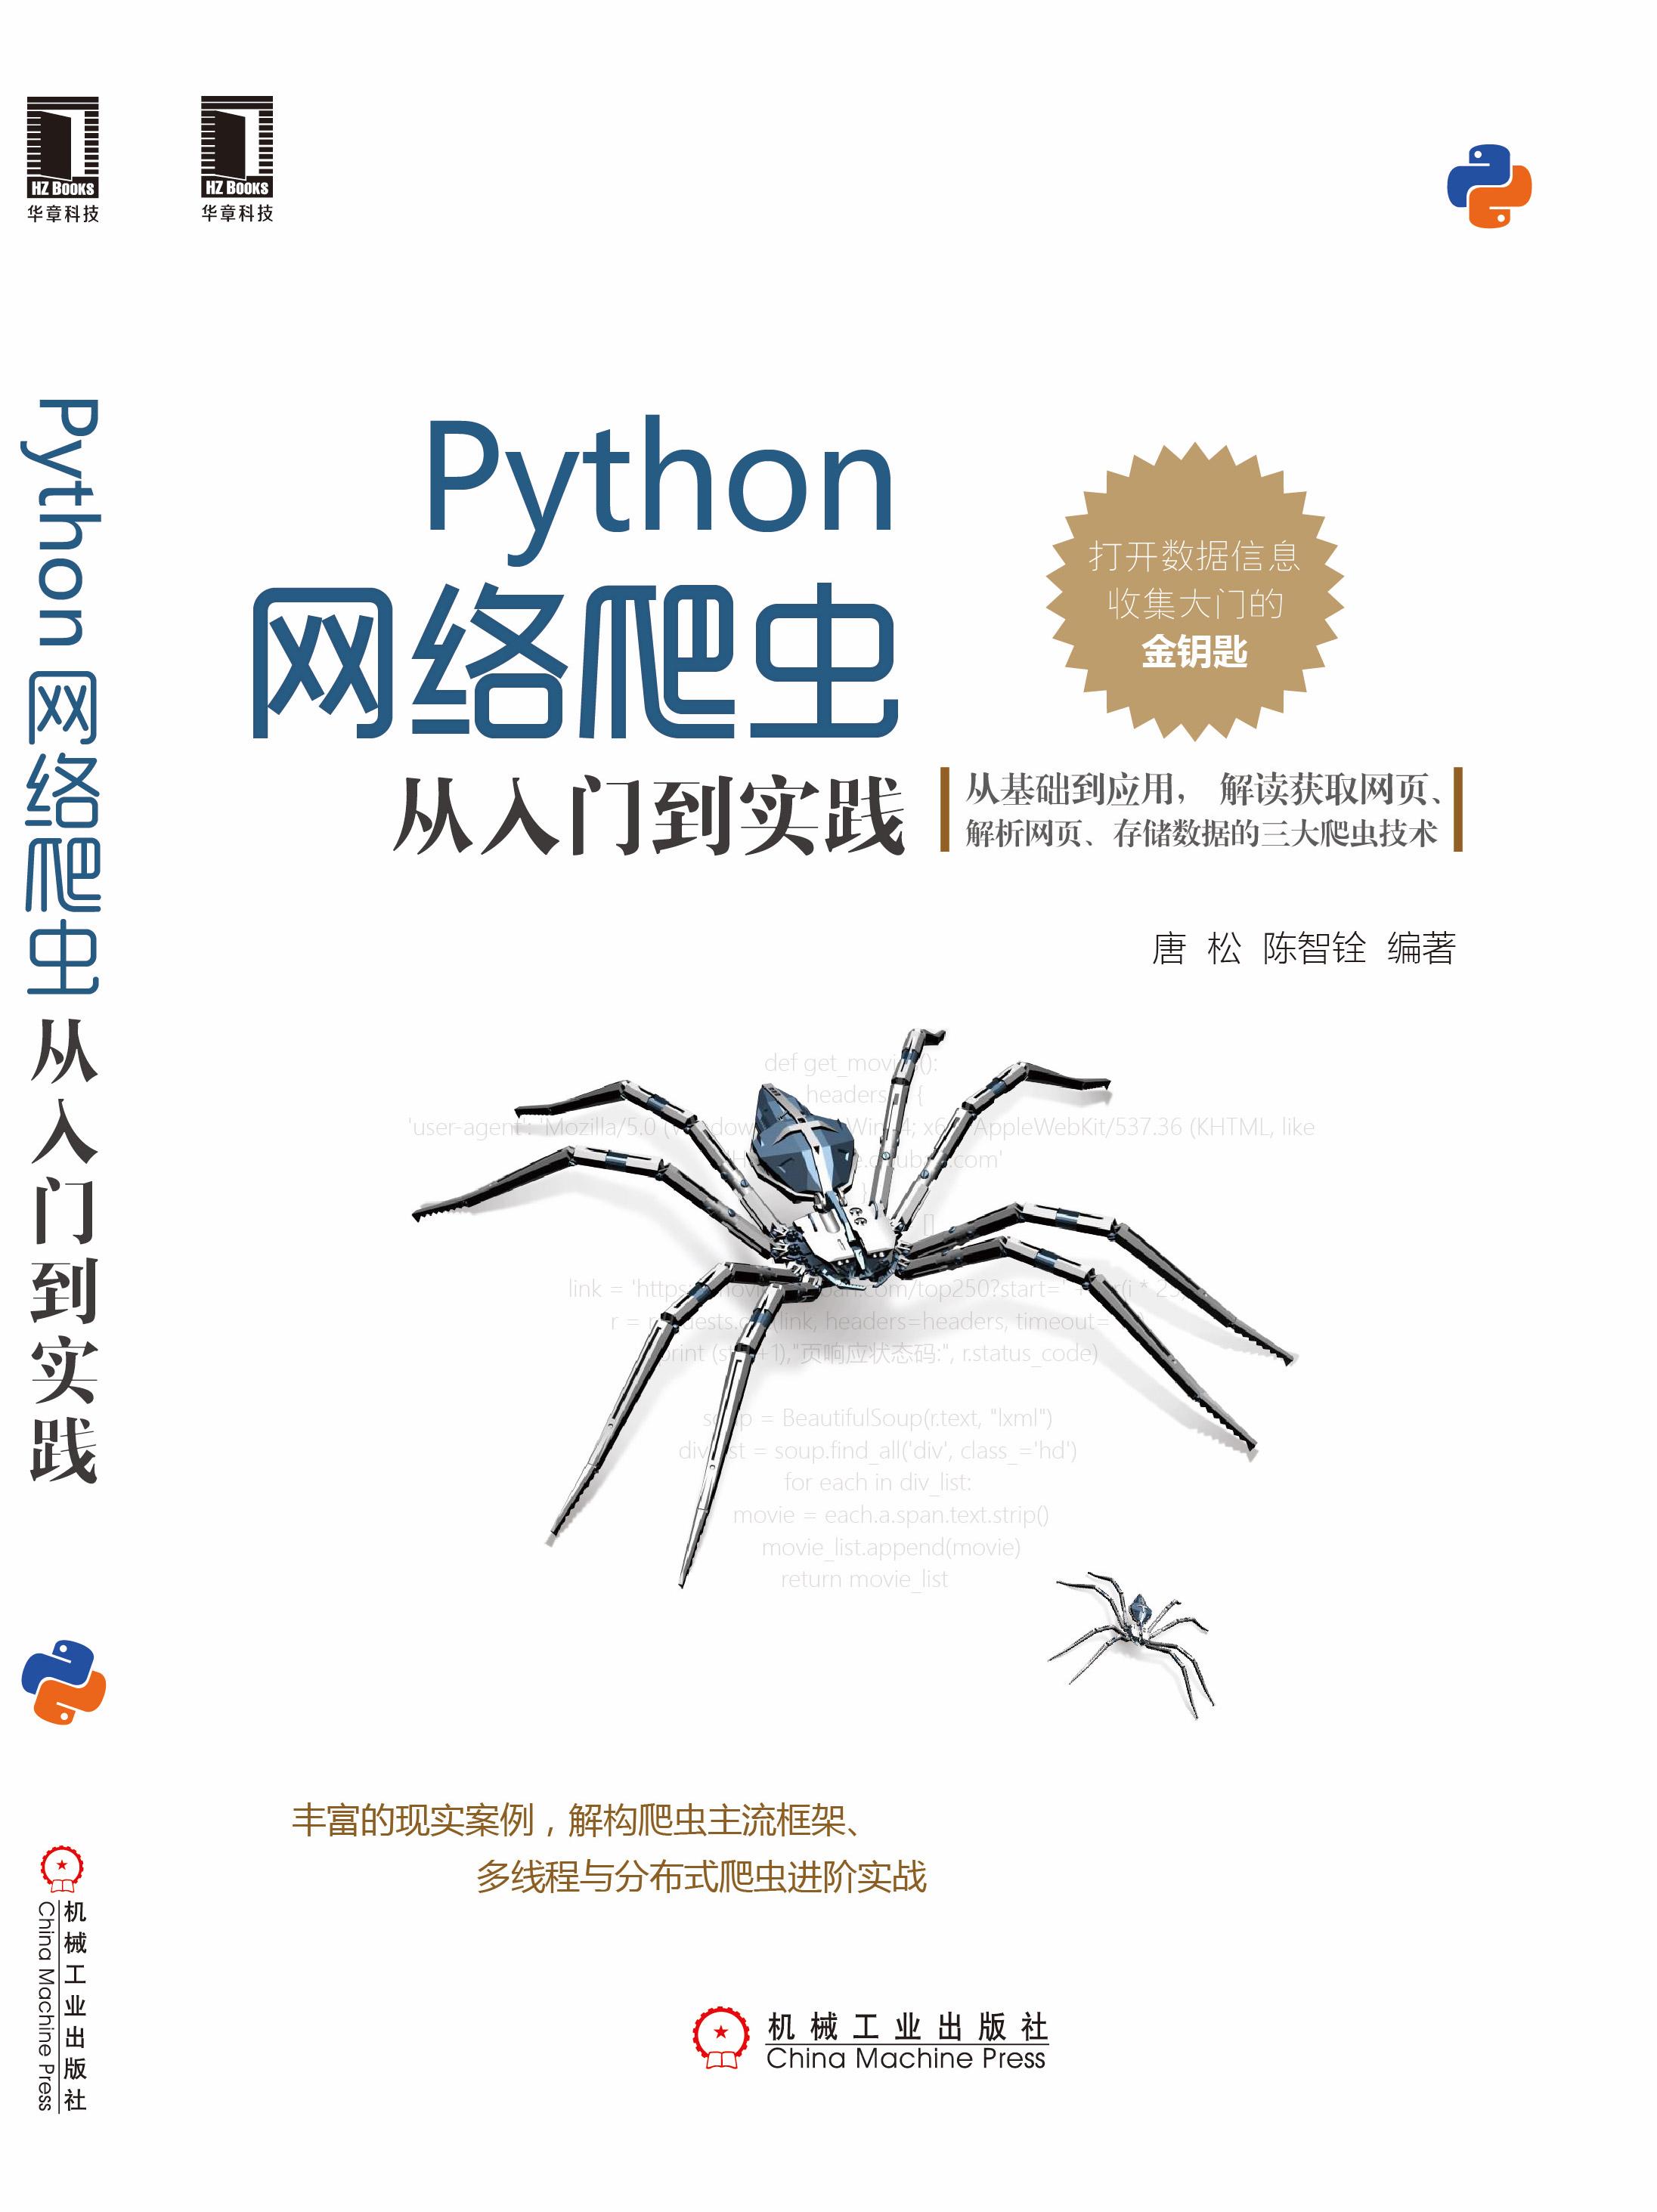 （549集）一套搞定爬虫！B站最系统的Python零基础入门到精通教学-哈喽沃德先生超详细讲解-小白必看的保姆级爬虫课程(P5 005_GVIM三种模式)_哔哩哔哩_bilibili